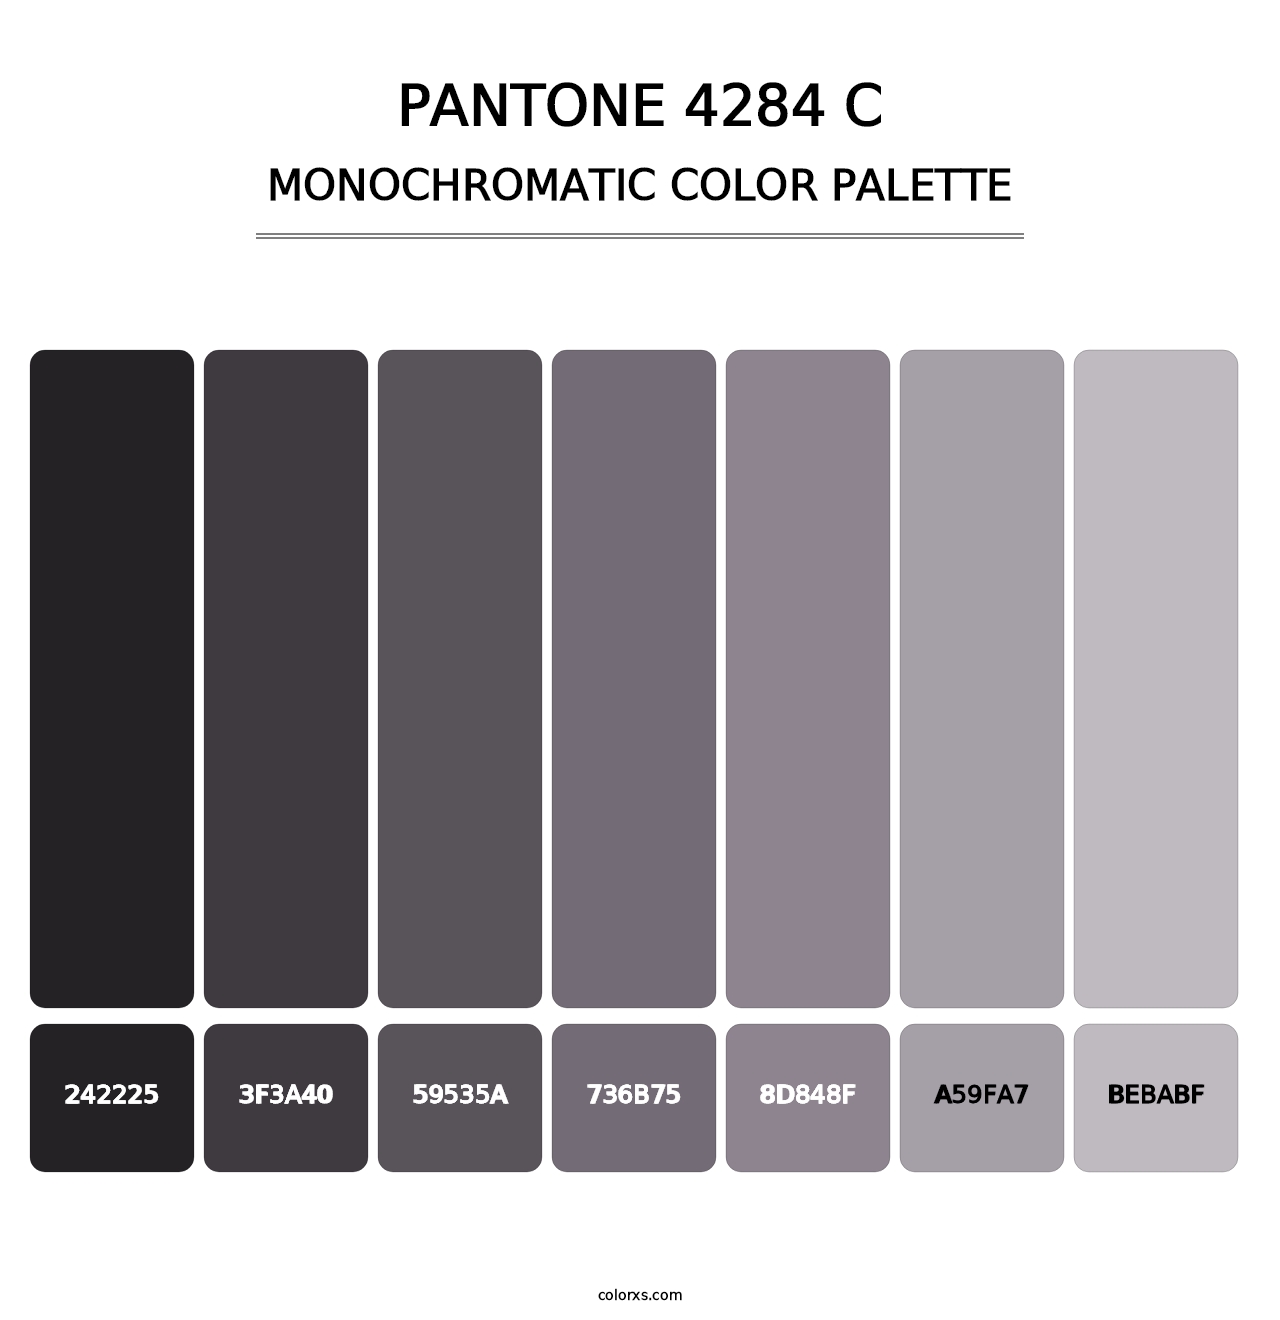 PANTONE 4284 C - Monochromatic Color Palette